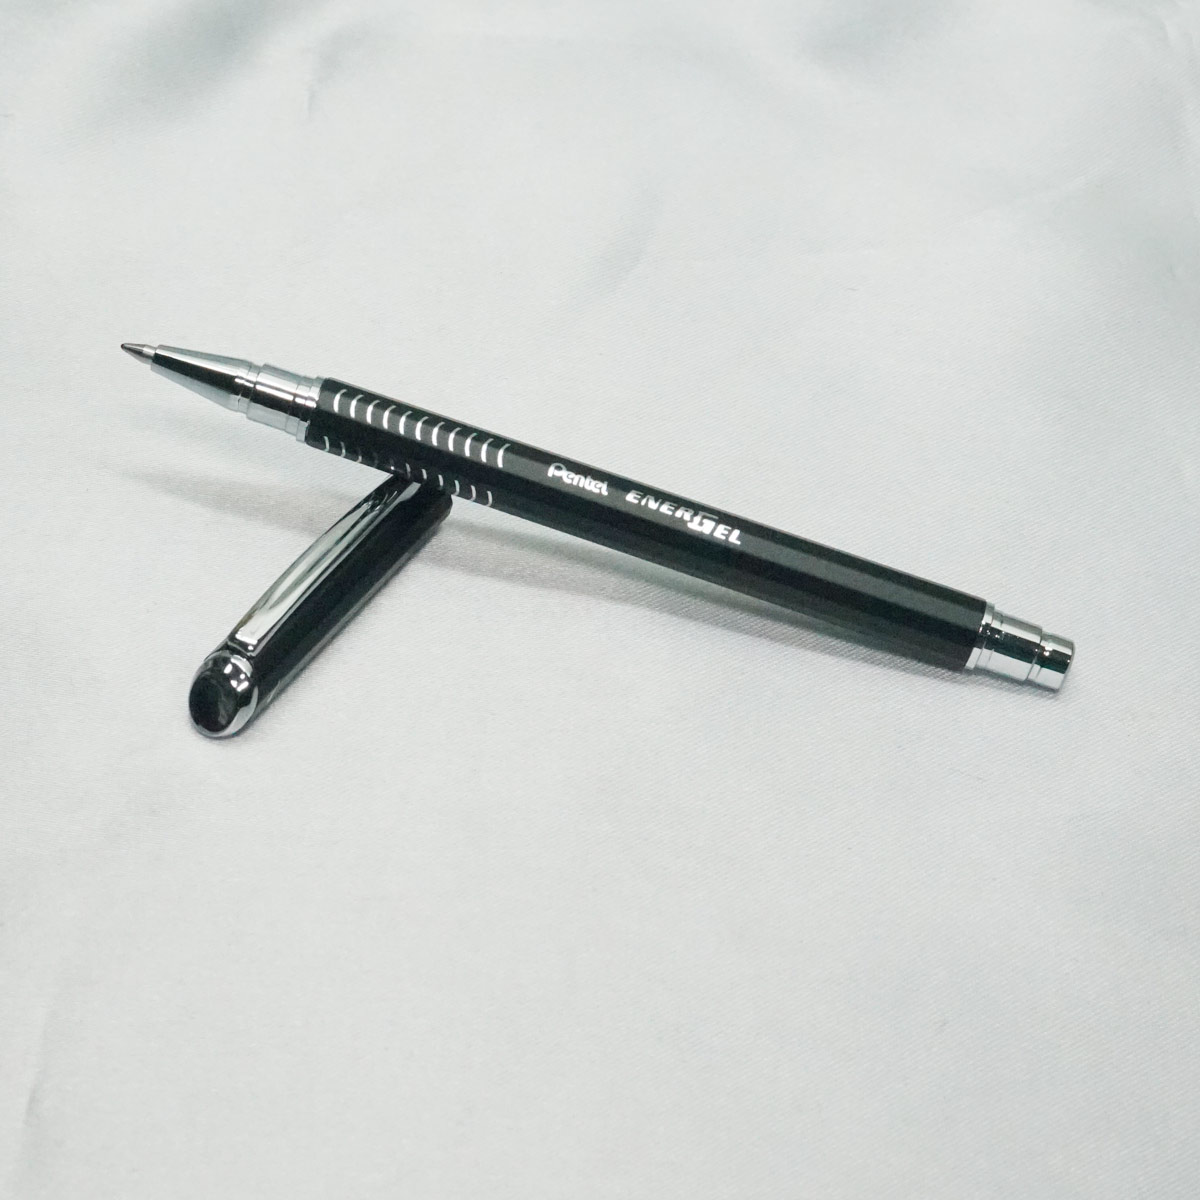 Pentel Energel Black Color Body Wit 0.7mm Tip Black Writing Cap Type Gel Pen SKU 21235